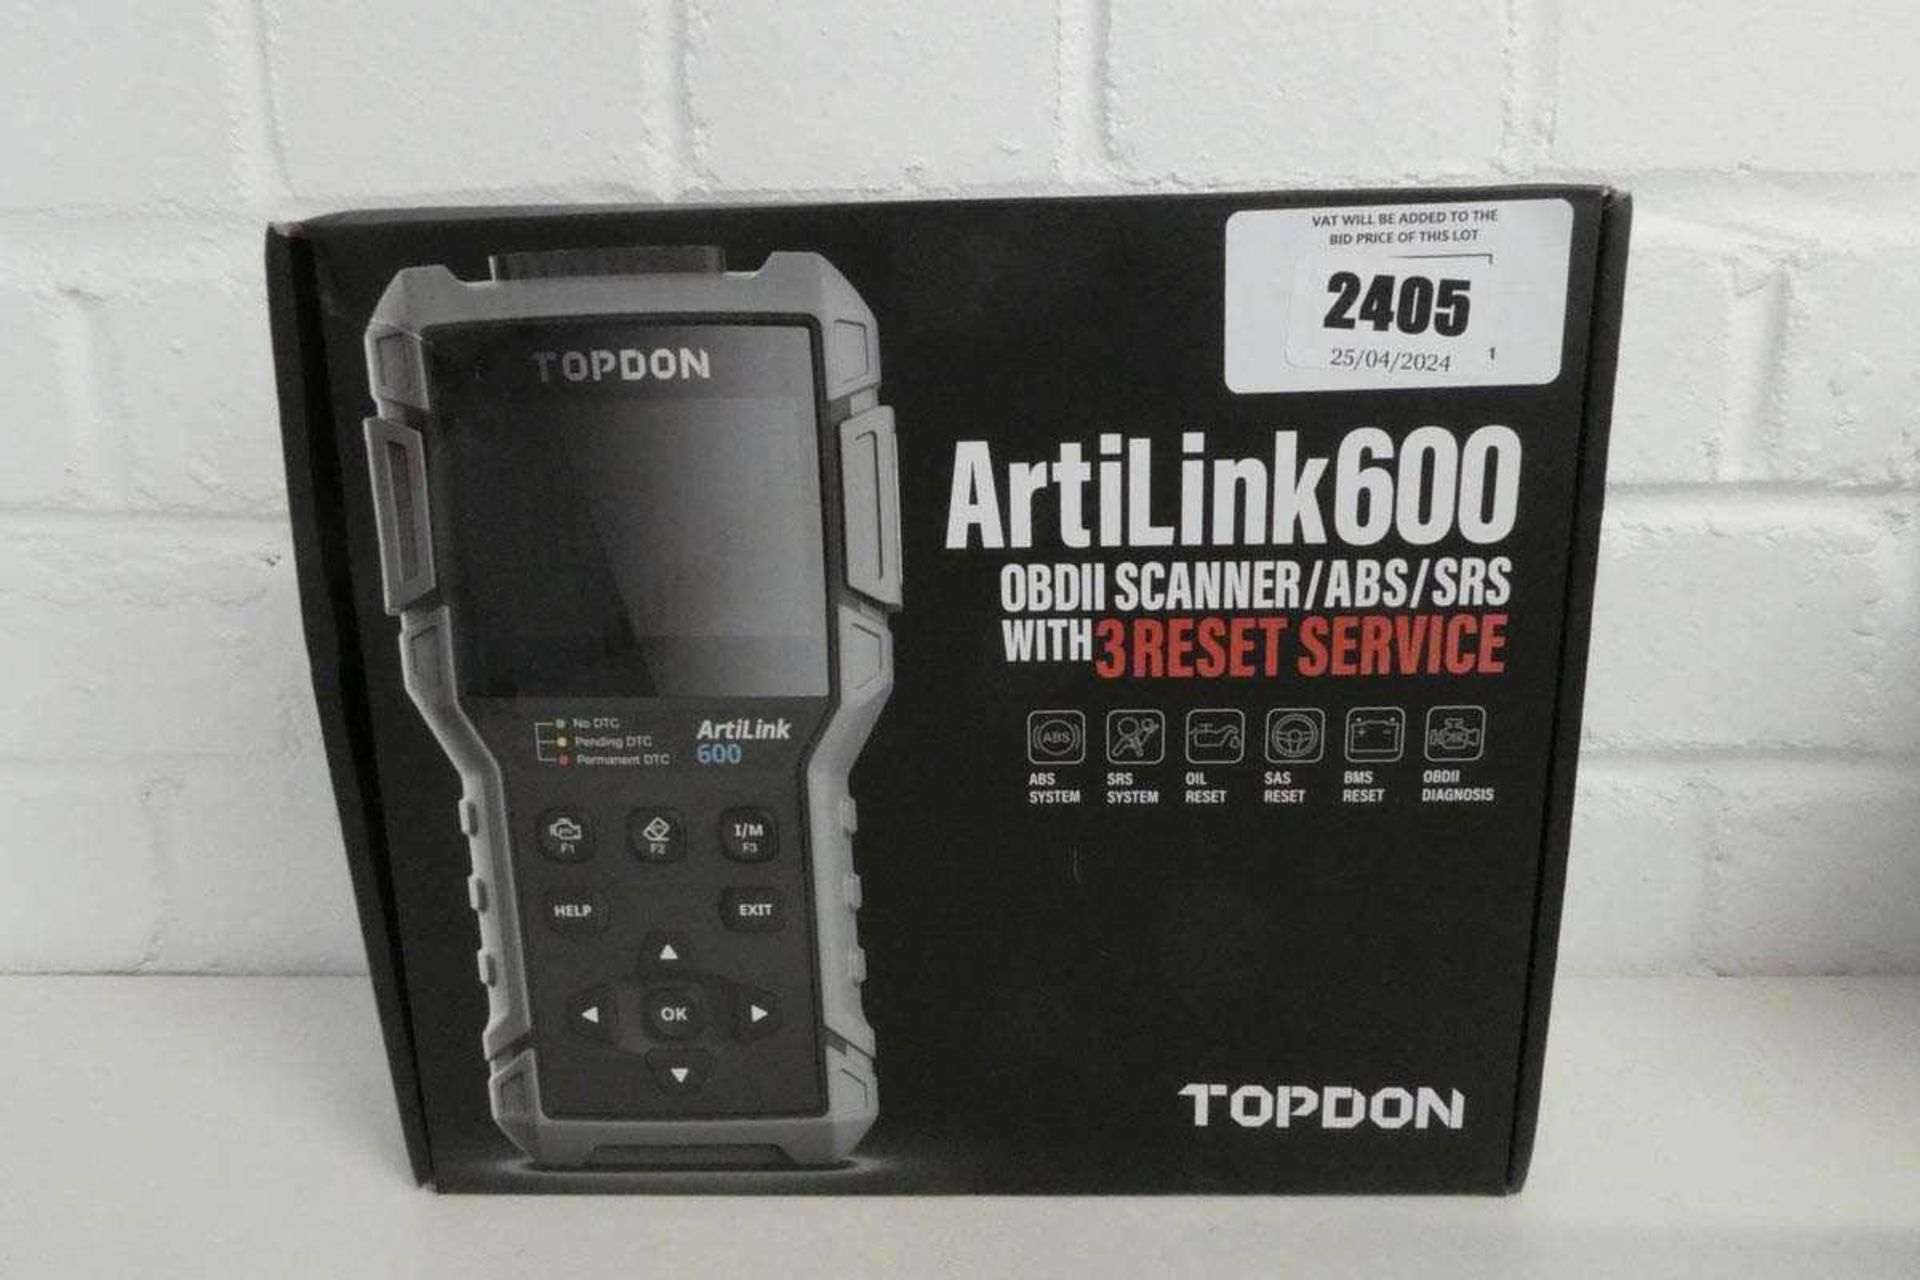 +VAT Boxed Topdon ArtiLink600 OBD II scanner/ADB/SRS